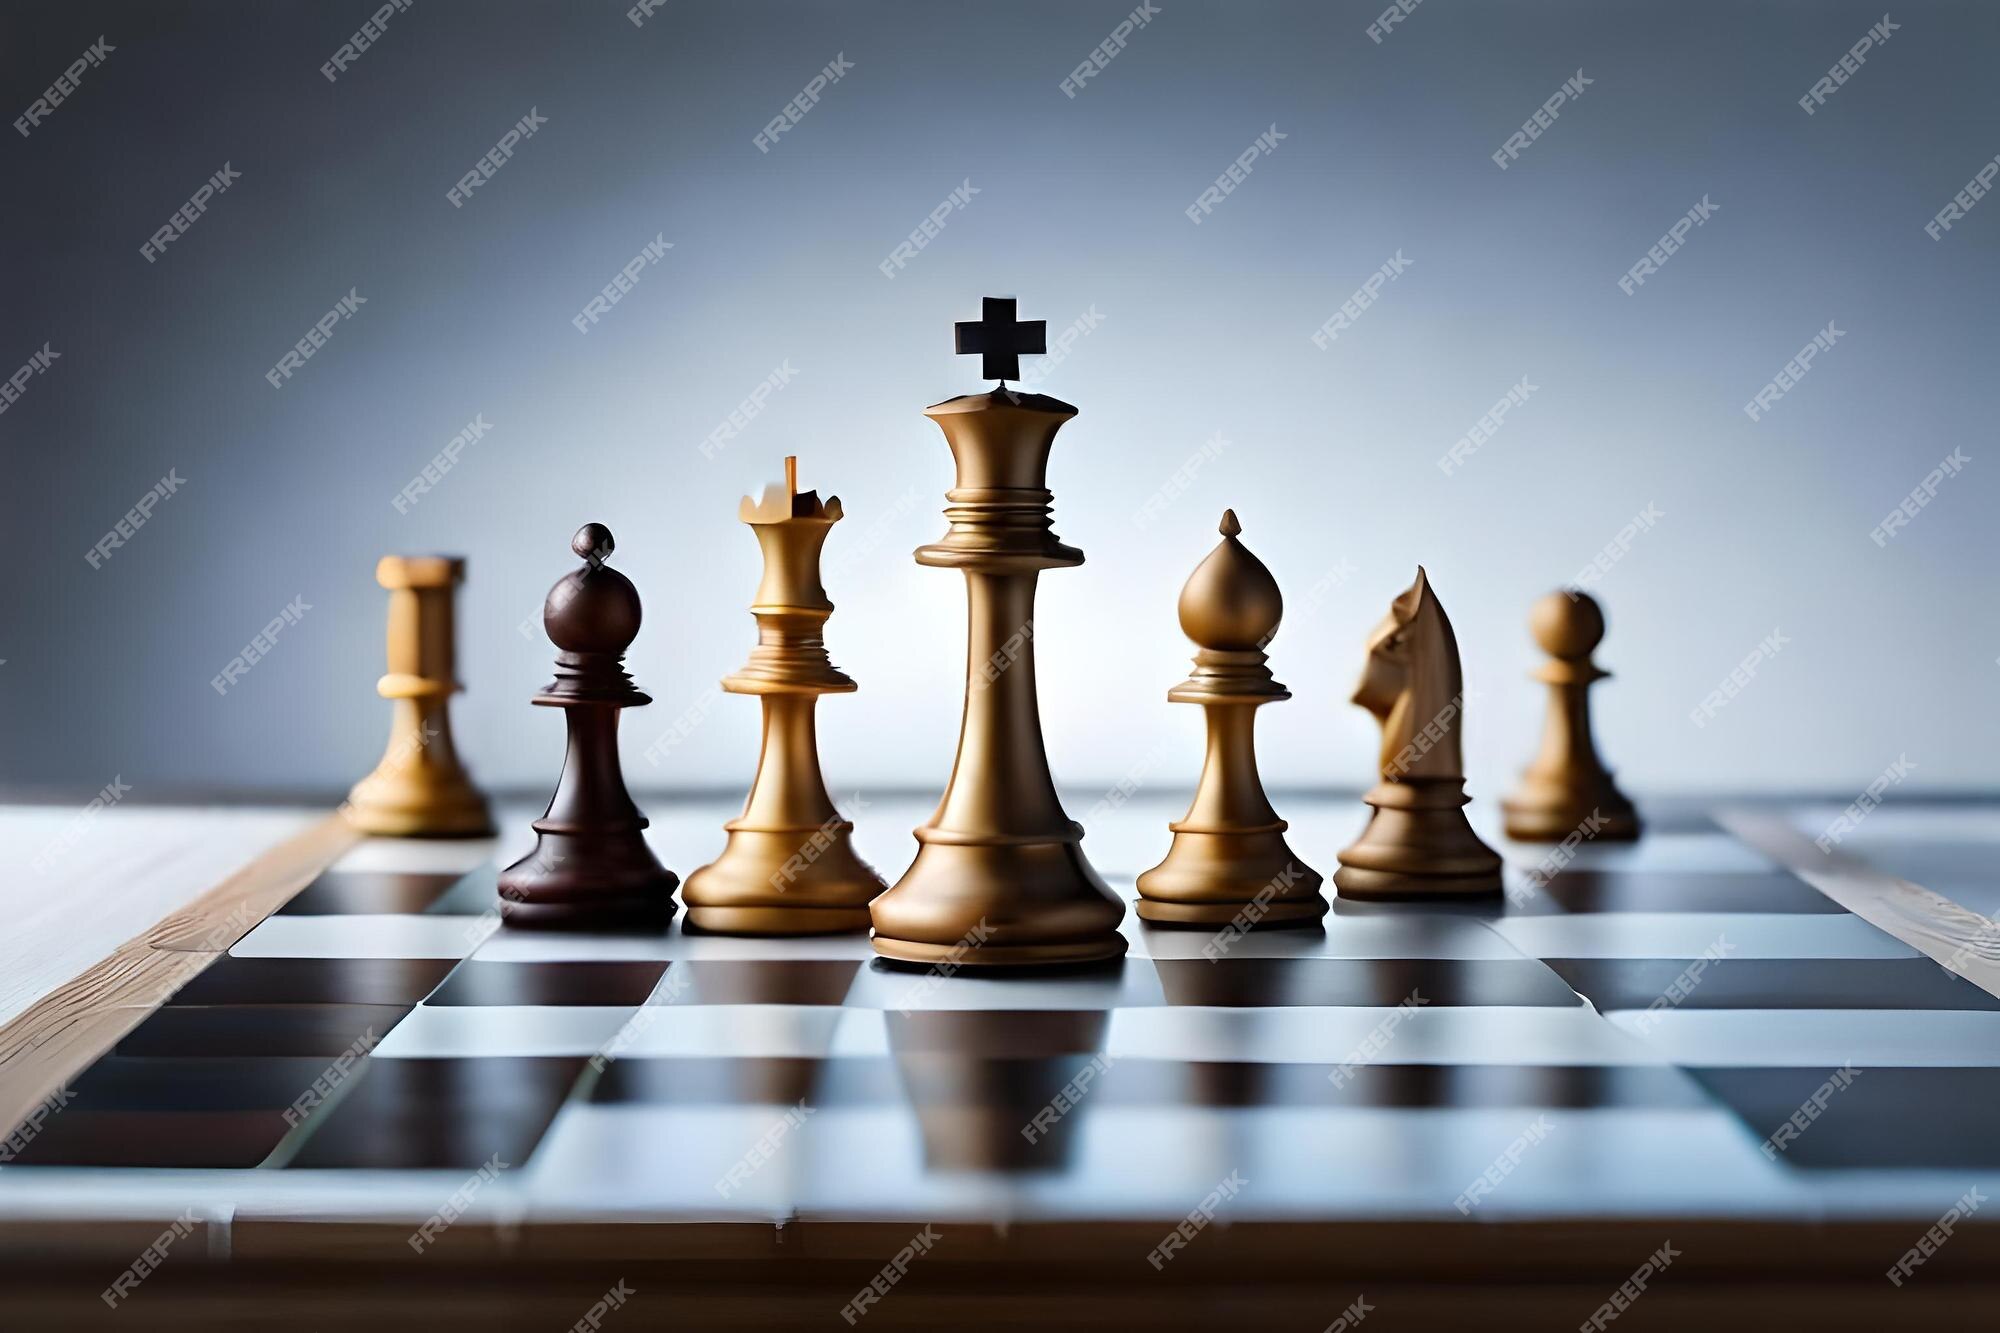 Jogadores Jogam Xadrez Em Um Tabuleiro De Xadrez Com Peças De Xadrez Em Um  Torneio Foto de Stock - Imagem de xadrez, rainha: 272933682